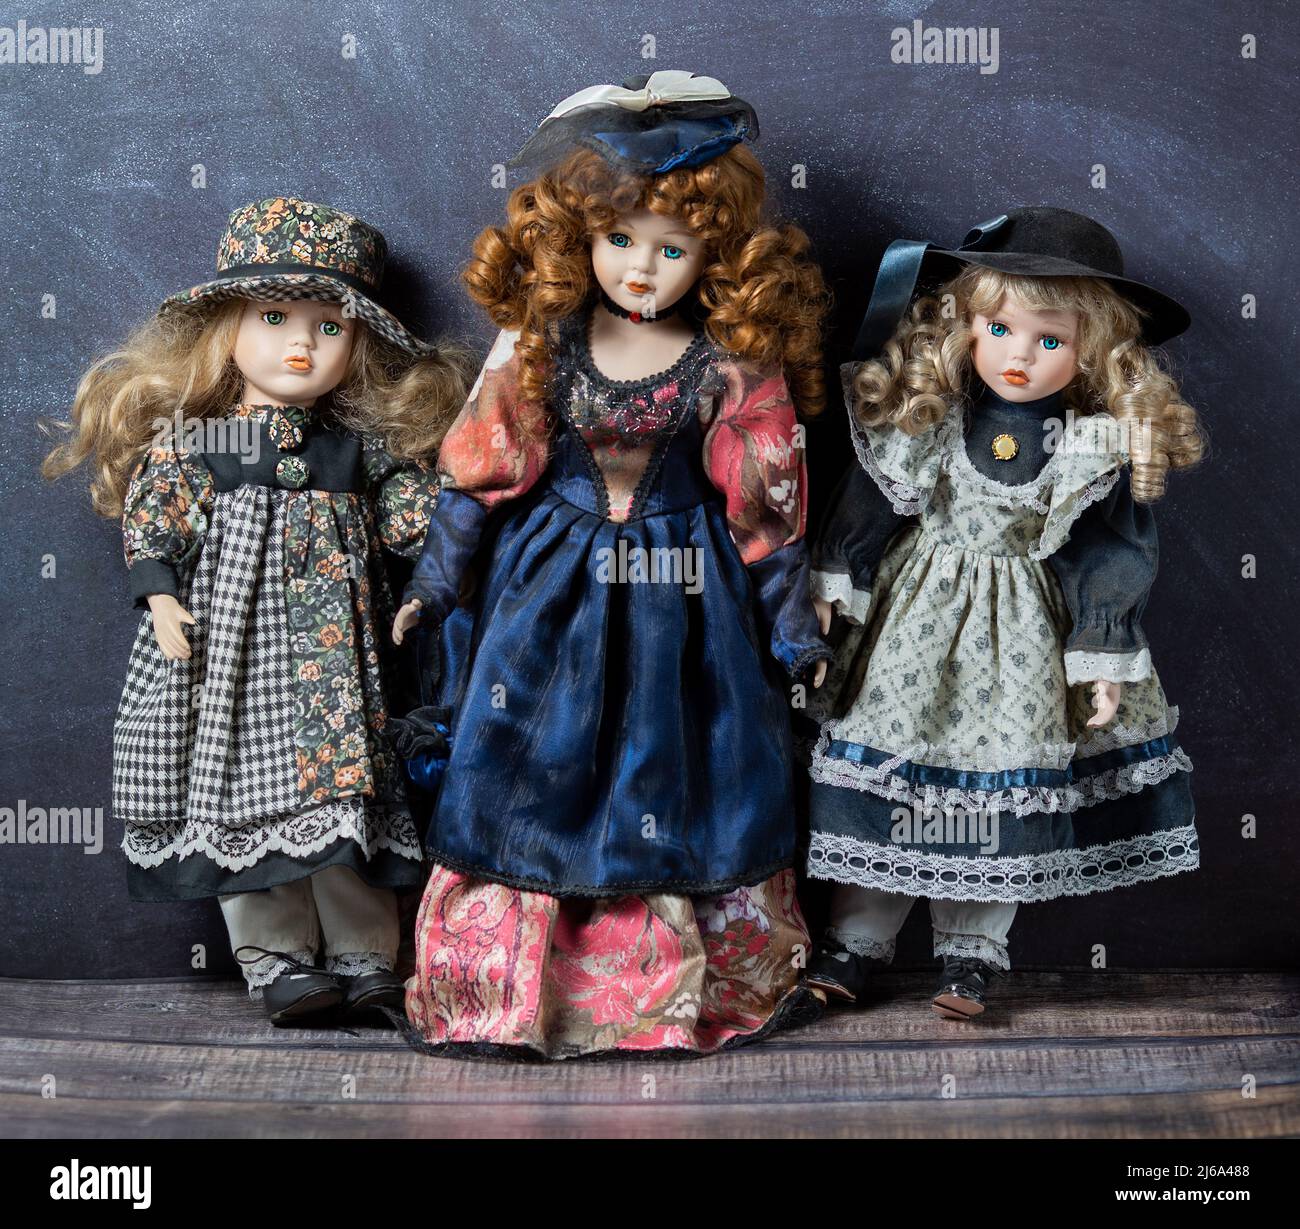 Erstaunlich realistische Vintage 3 Spielzeug mit blauen und grünen Augen.die Puppen in einem schönen farbigen Kleidern gekleidet. Selektiver Fokus. Porzellanpuppen. Stockfoto